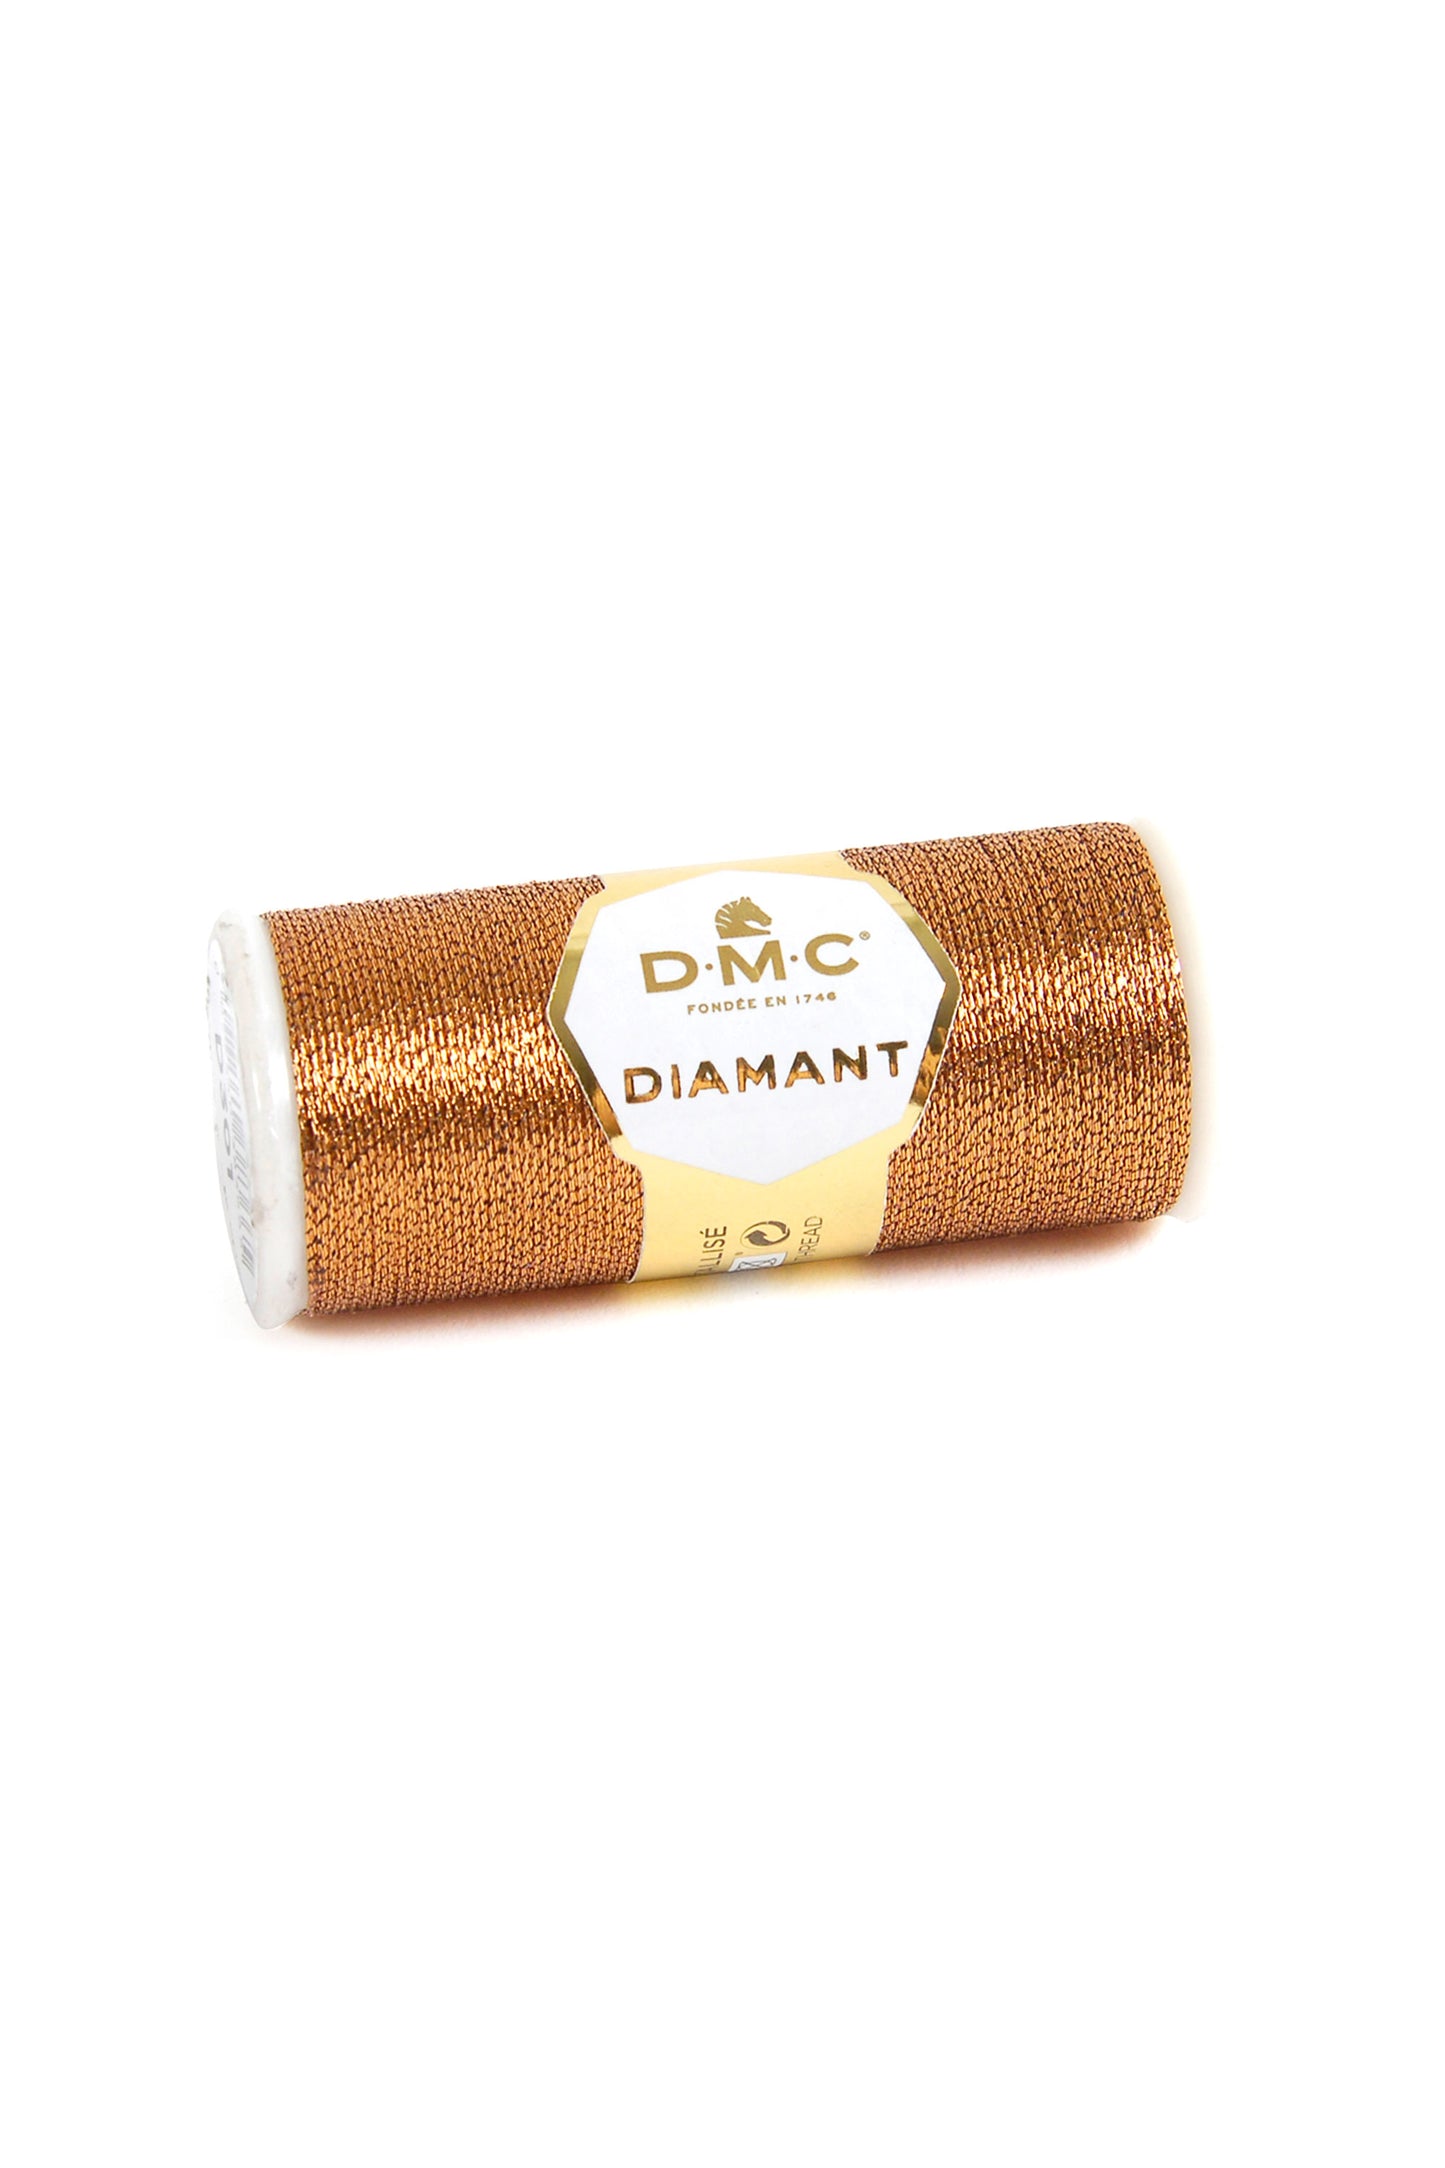 D301 Copper – DMC Diamant metallic thread